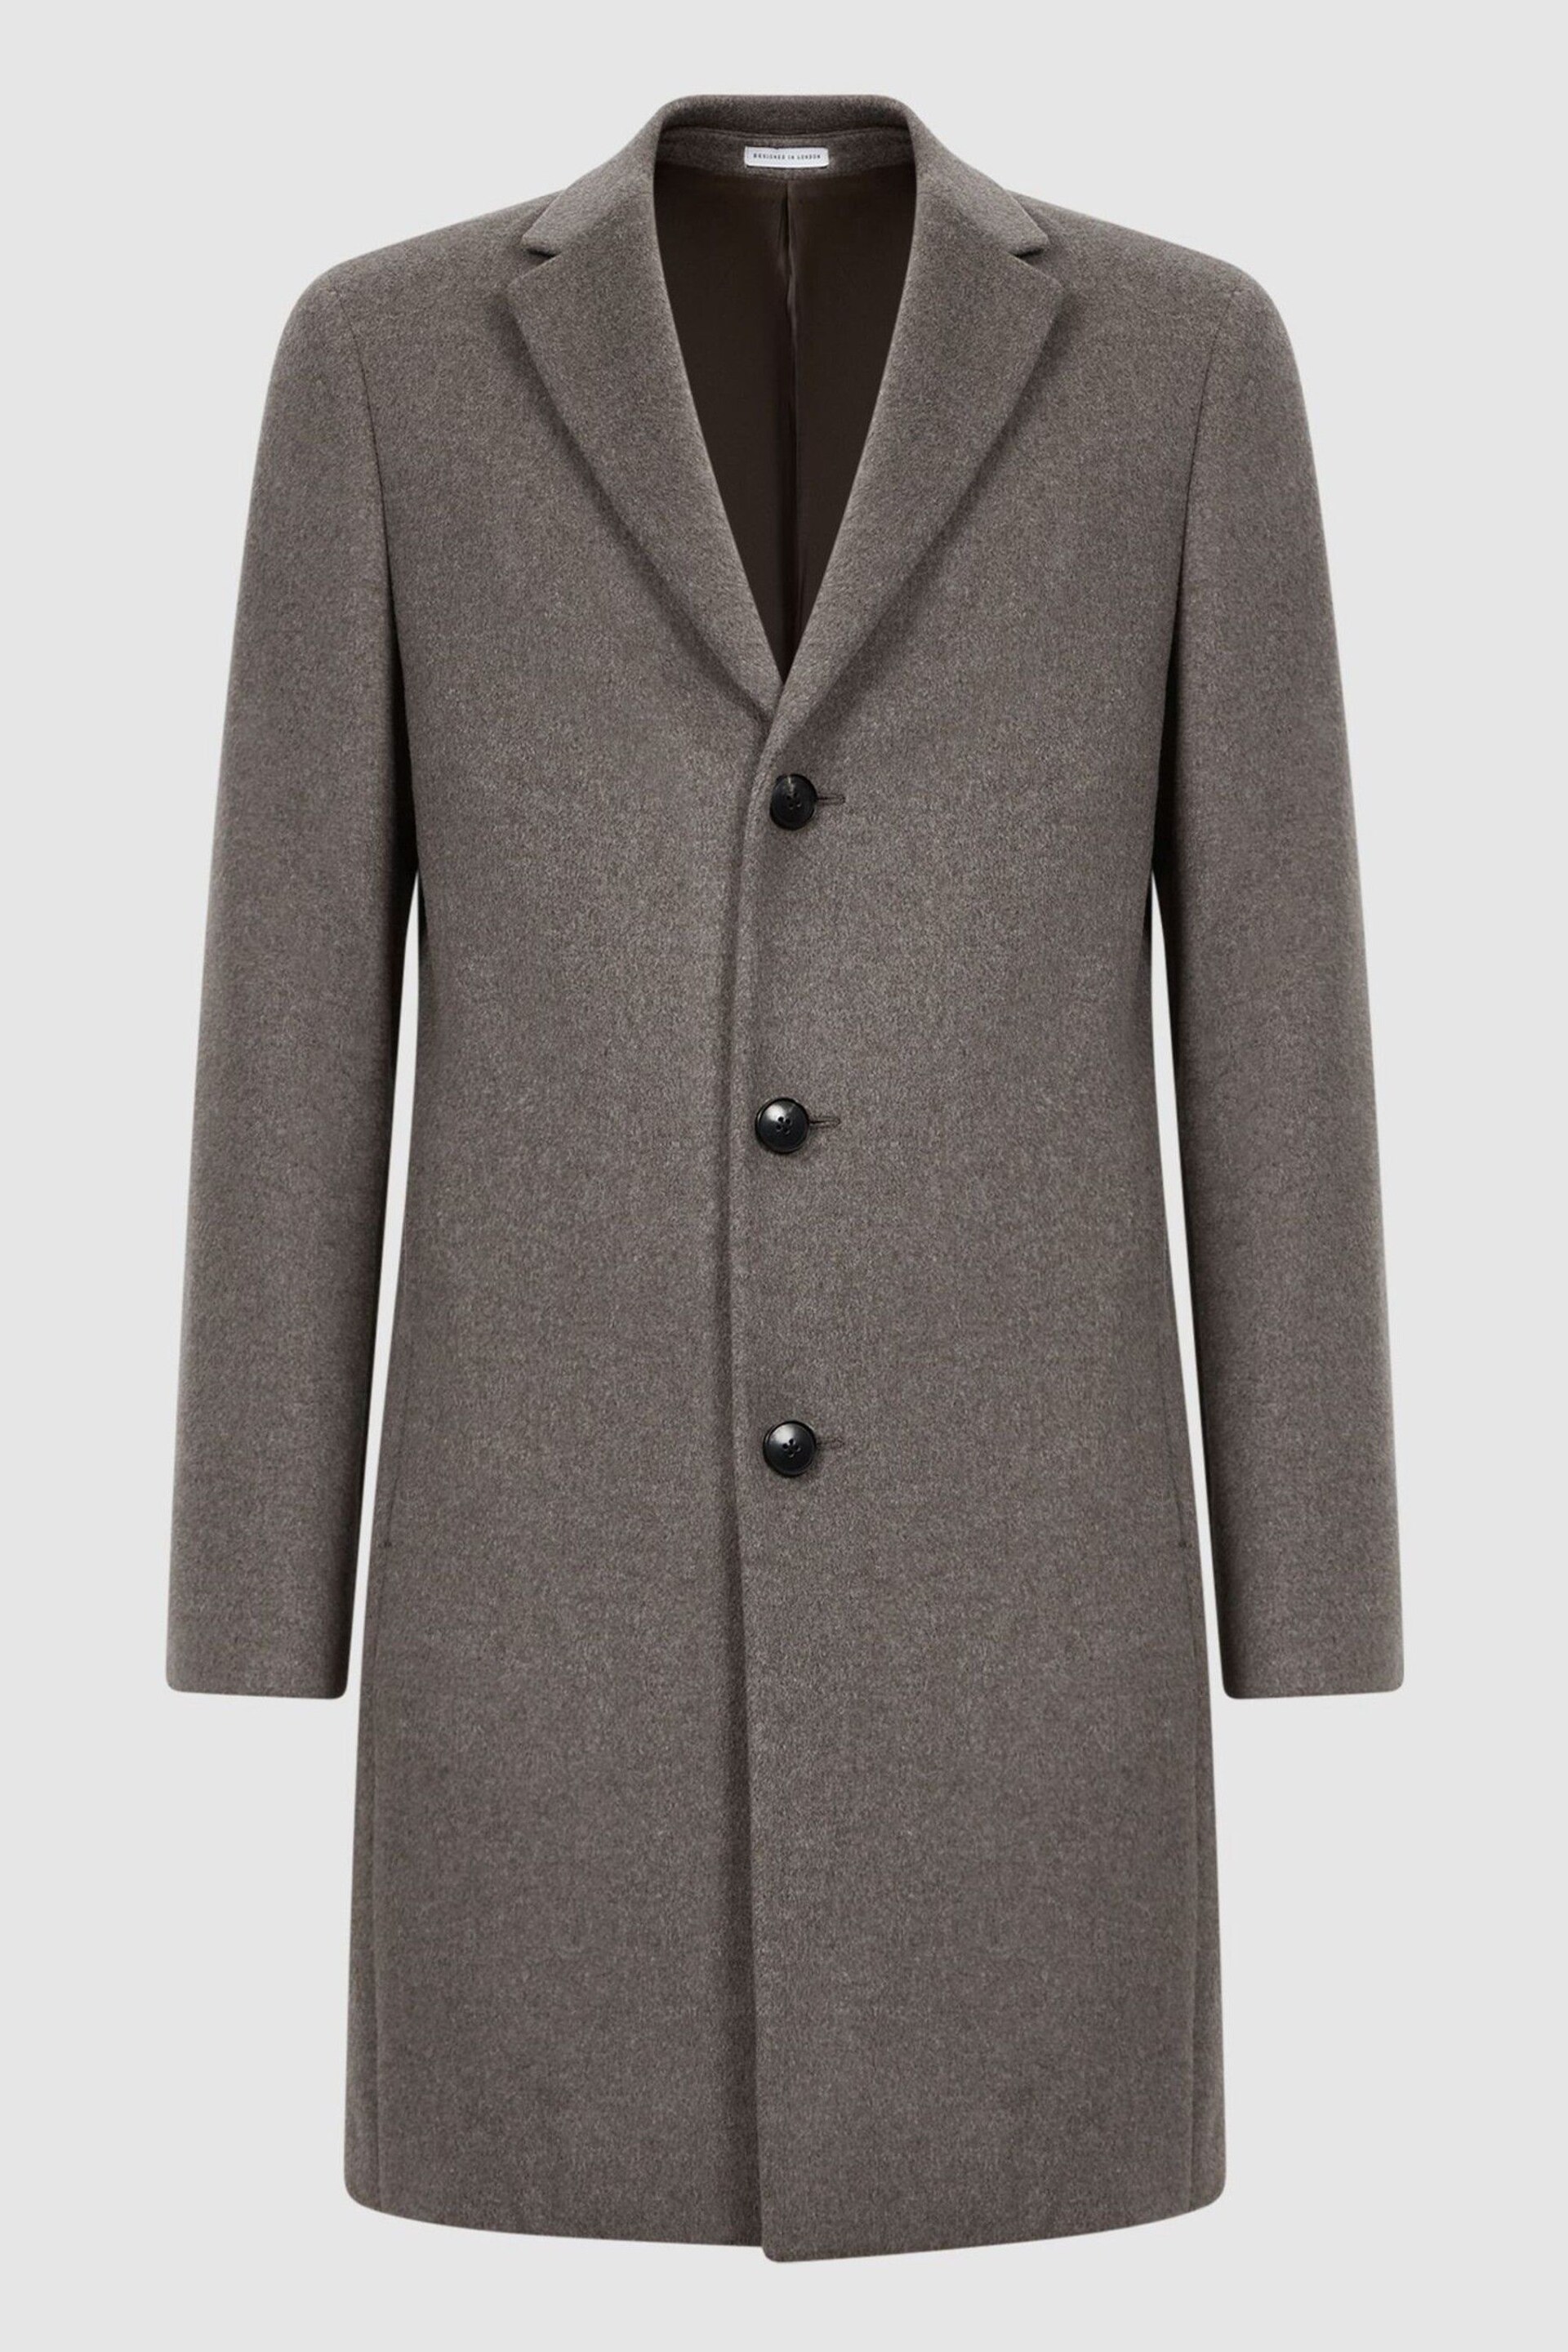 Reiss Mouse Melange Gable Wool Blend Single Breasted Epsom Overcoat - Image 2 of 5